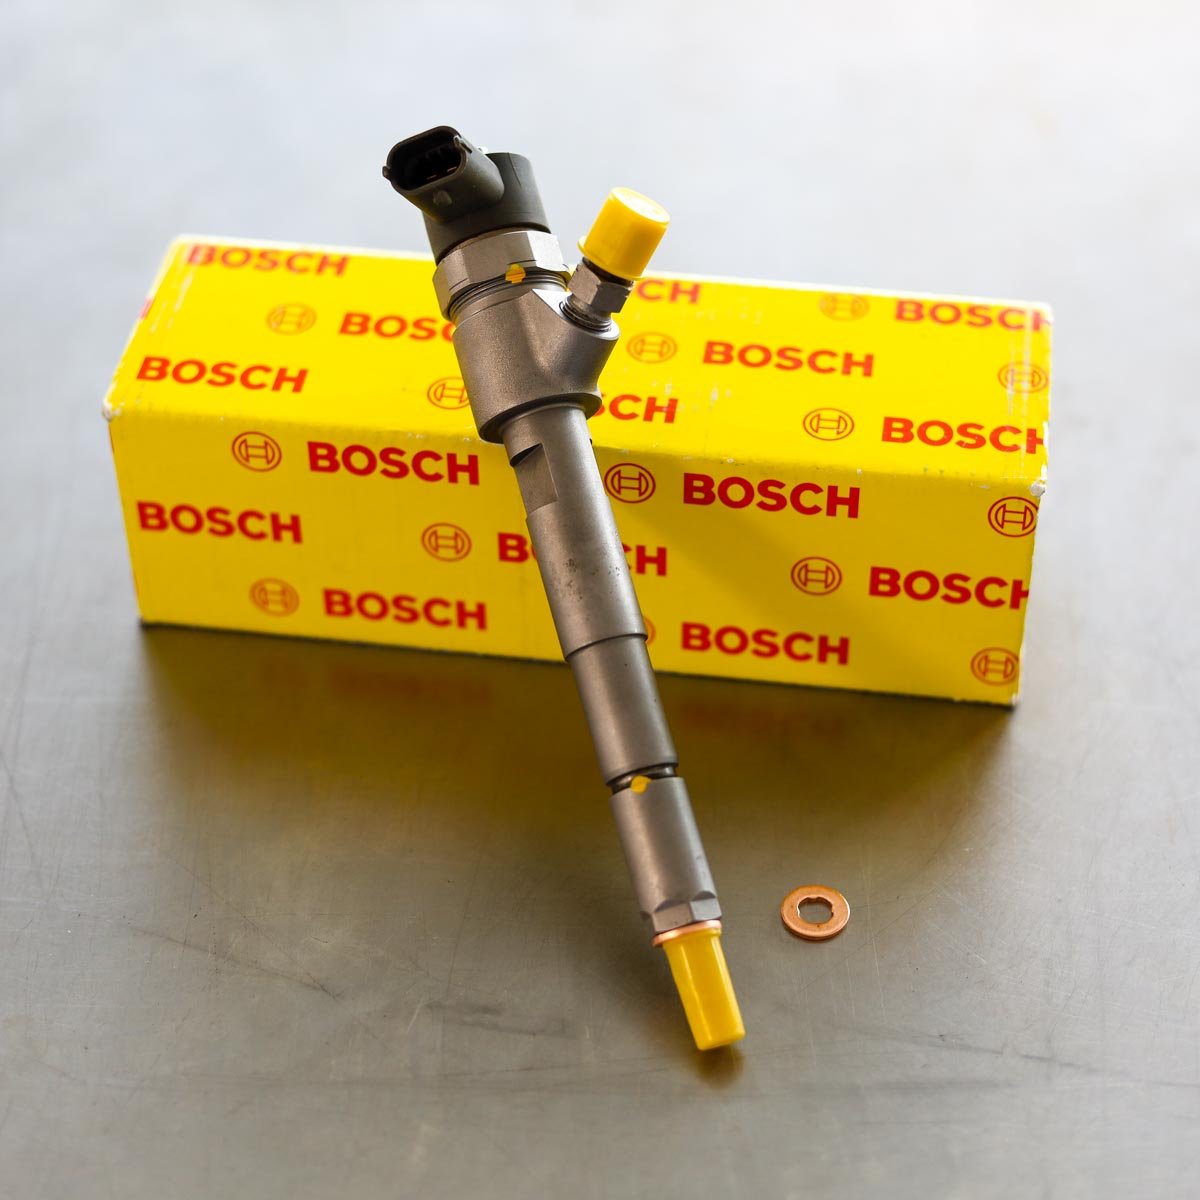 Wtryskiwacz Bosch po naprawie gotowy do nadania do serwisu z gwarancją 24 miesiące w dobrej cenie